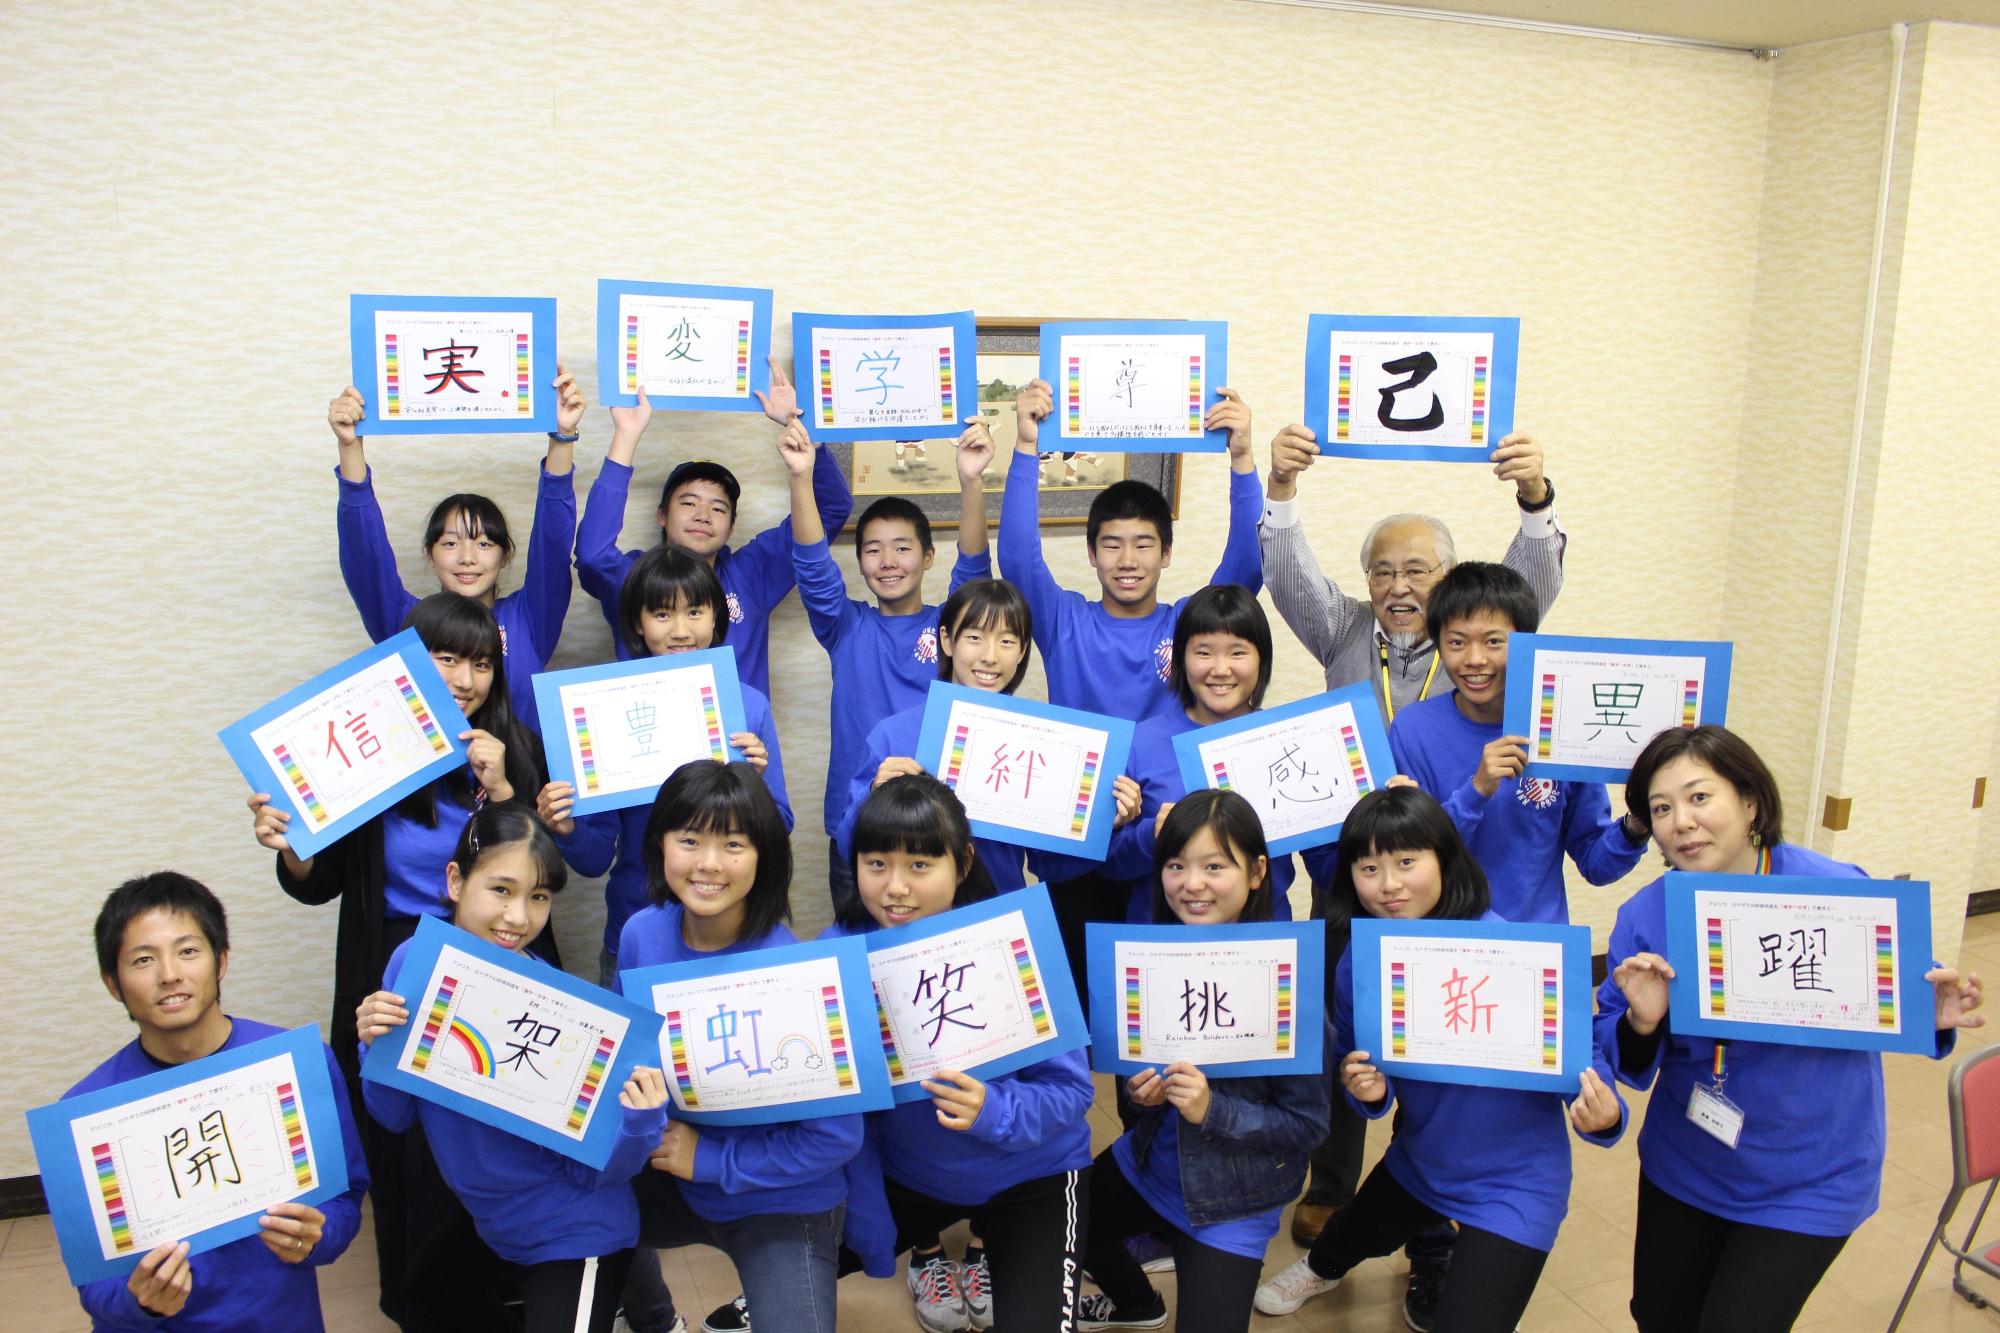 派遣団の人達がおそろいの青いシャツを着て今回の研修を漢字一文字で表した用紙を一人一人もち笑顔で撮った集合写真